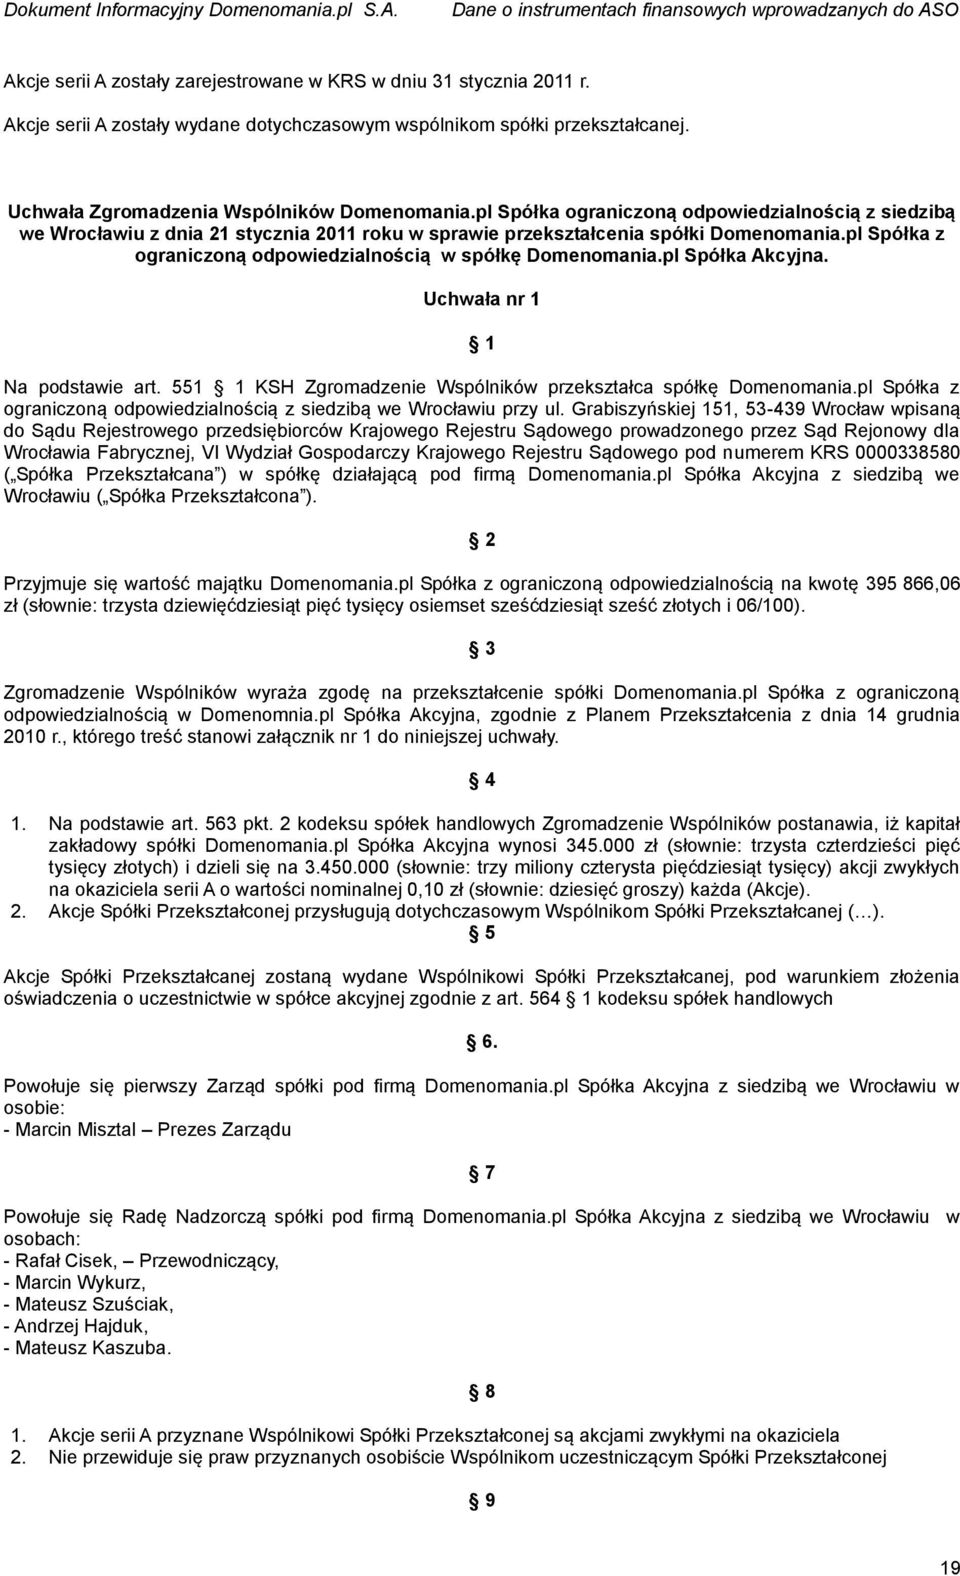 pl Spółka ograniczoną odpowiedzialnością z siedzibą we Wrocławiu z dnia 21 stycznia 2011 roku w sprawie przekształcenia spółki Domenomania.